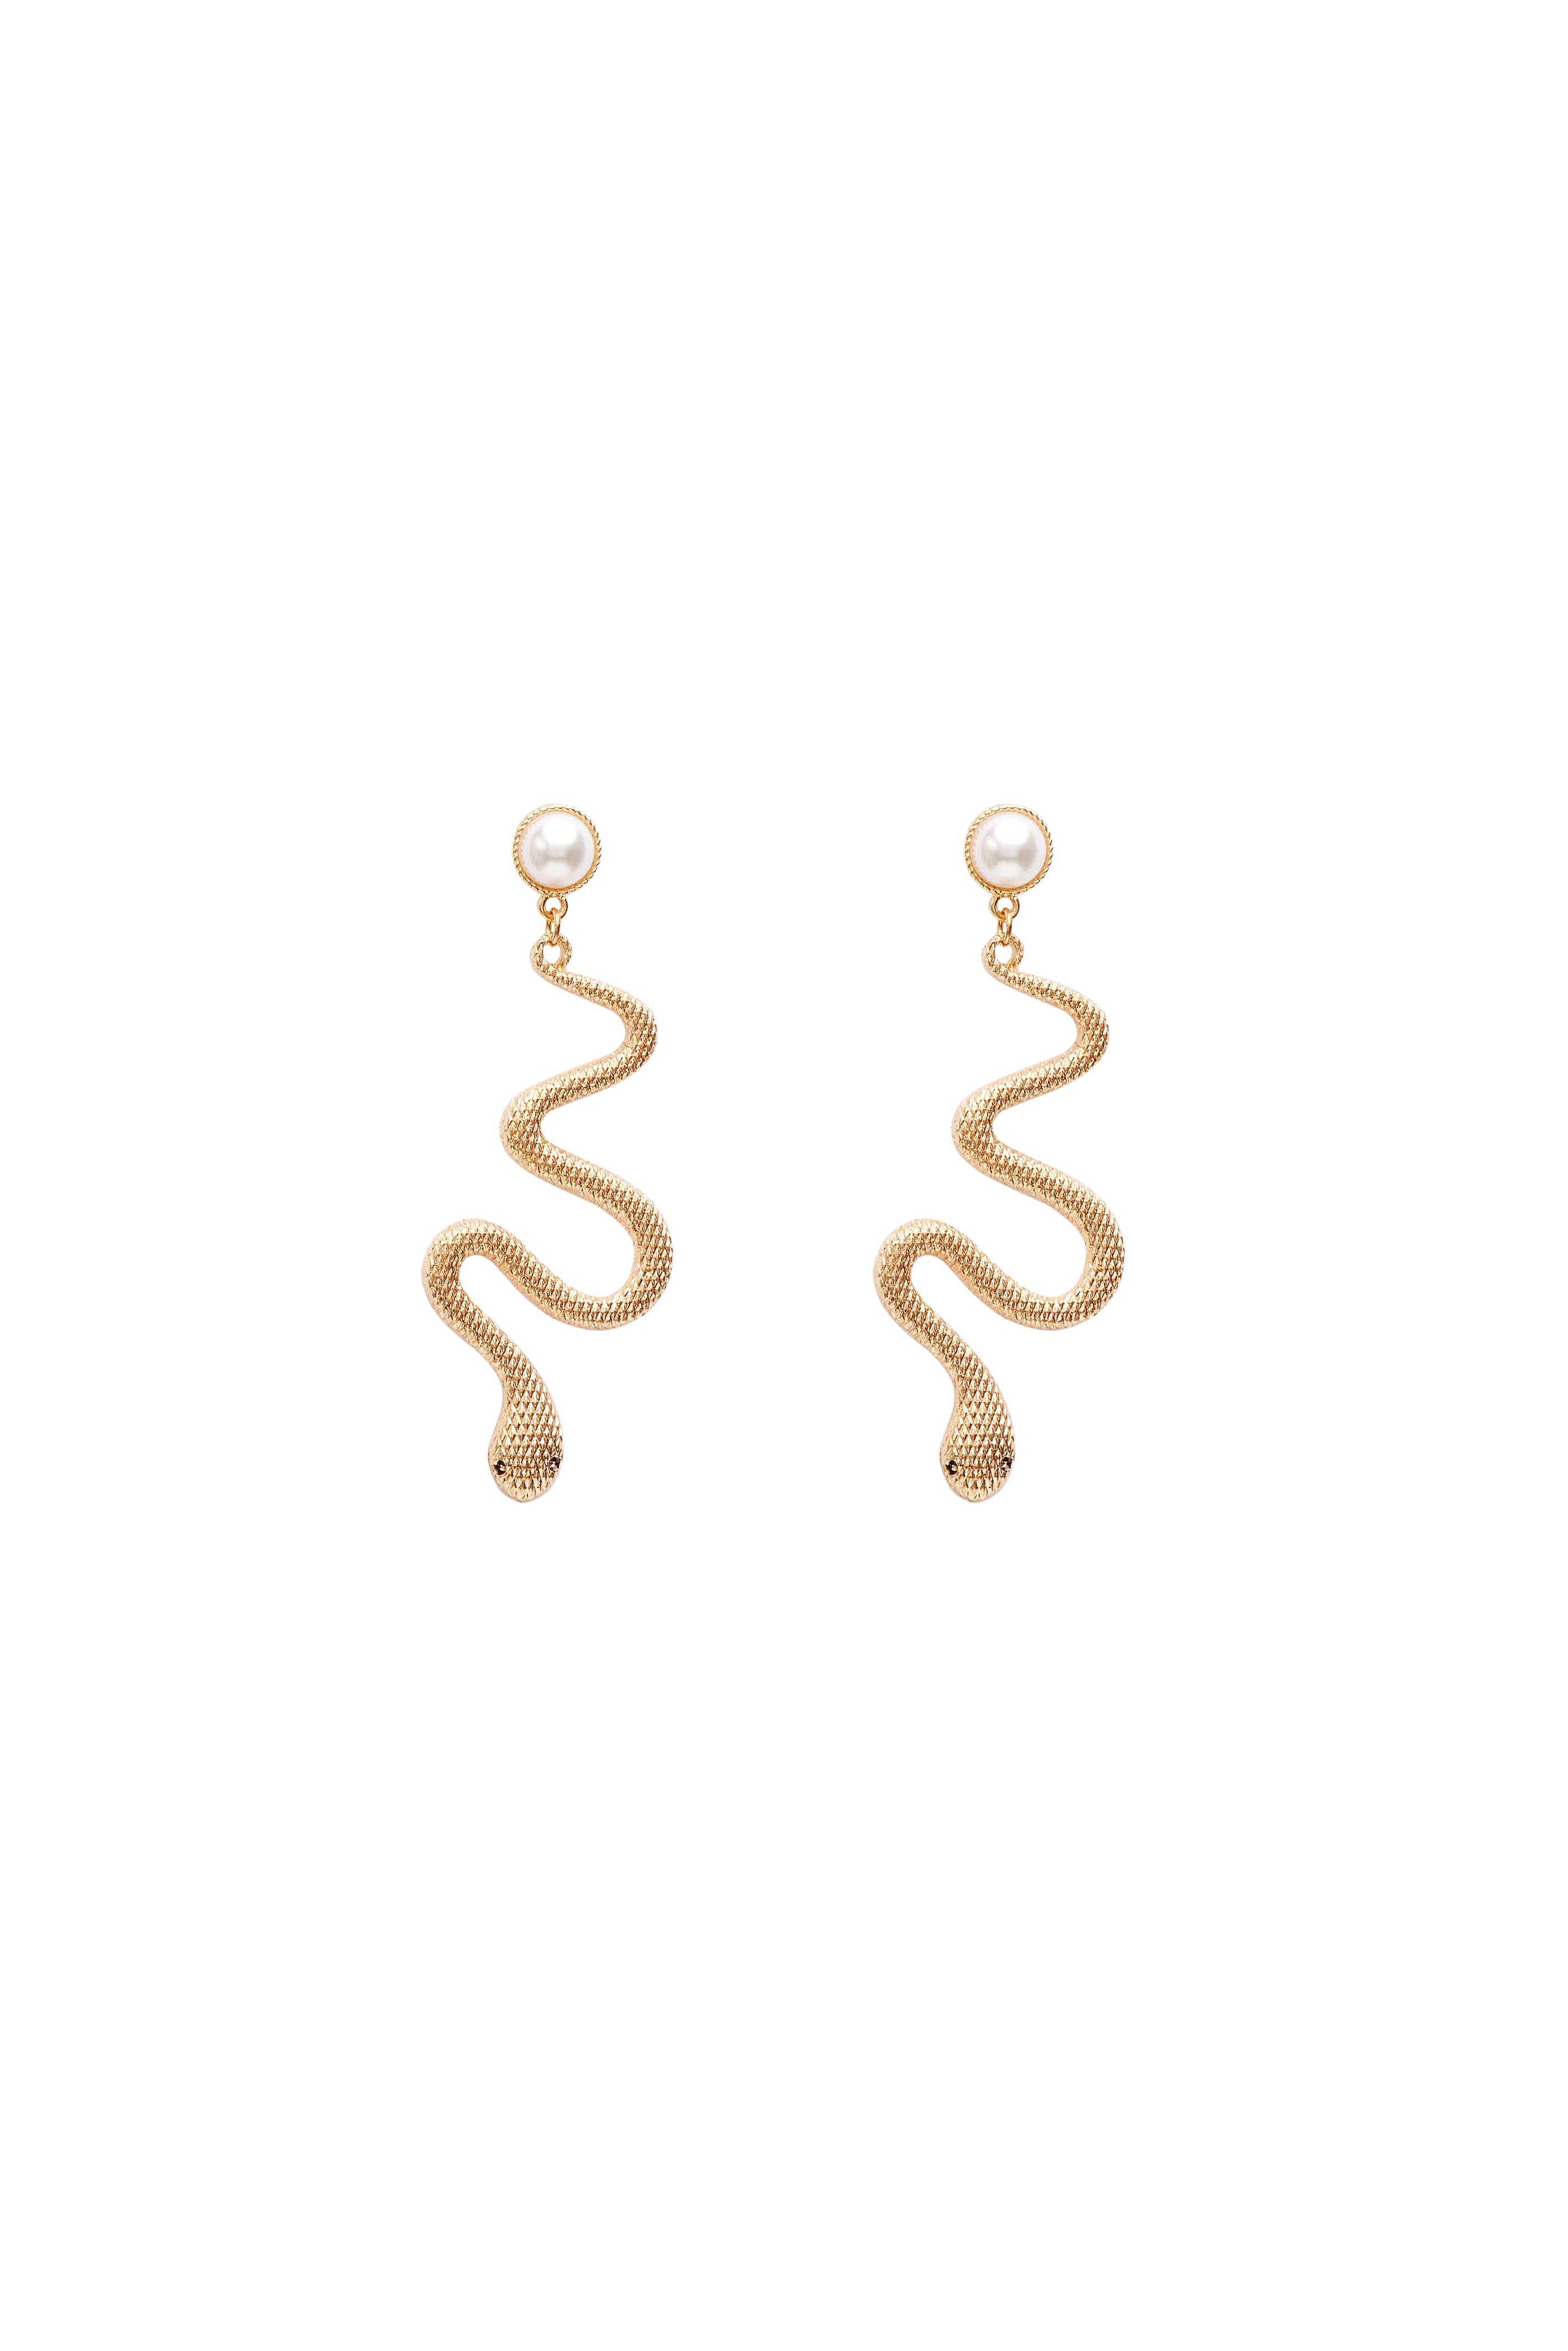 Pearl Gold Snake Earrings